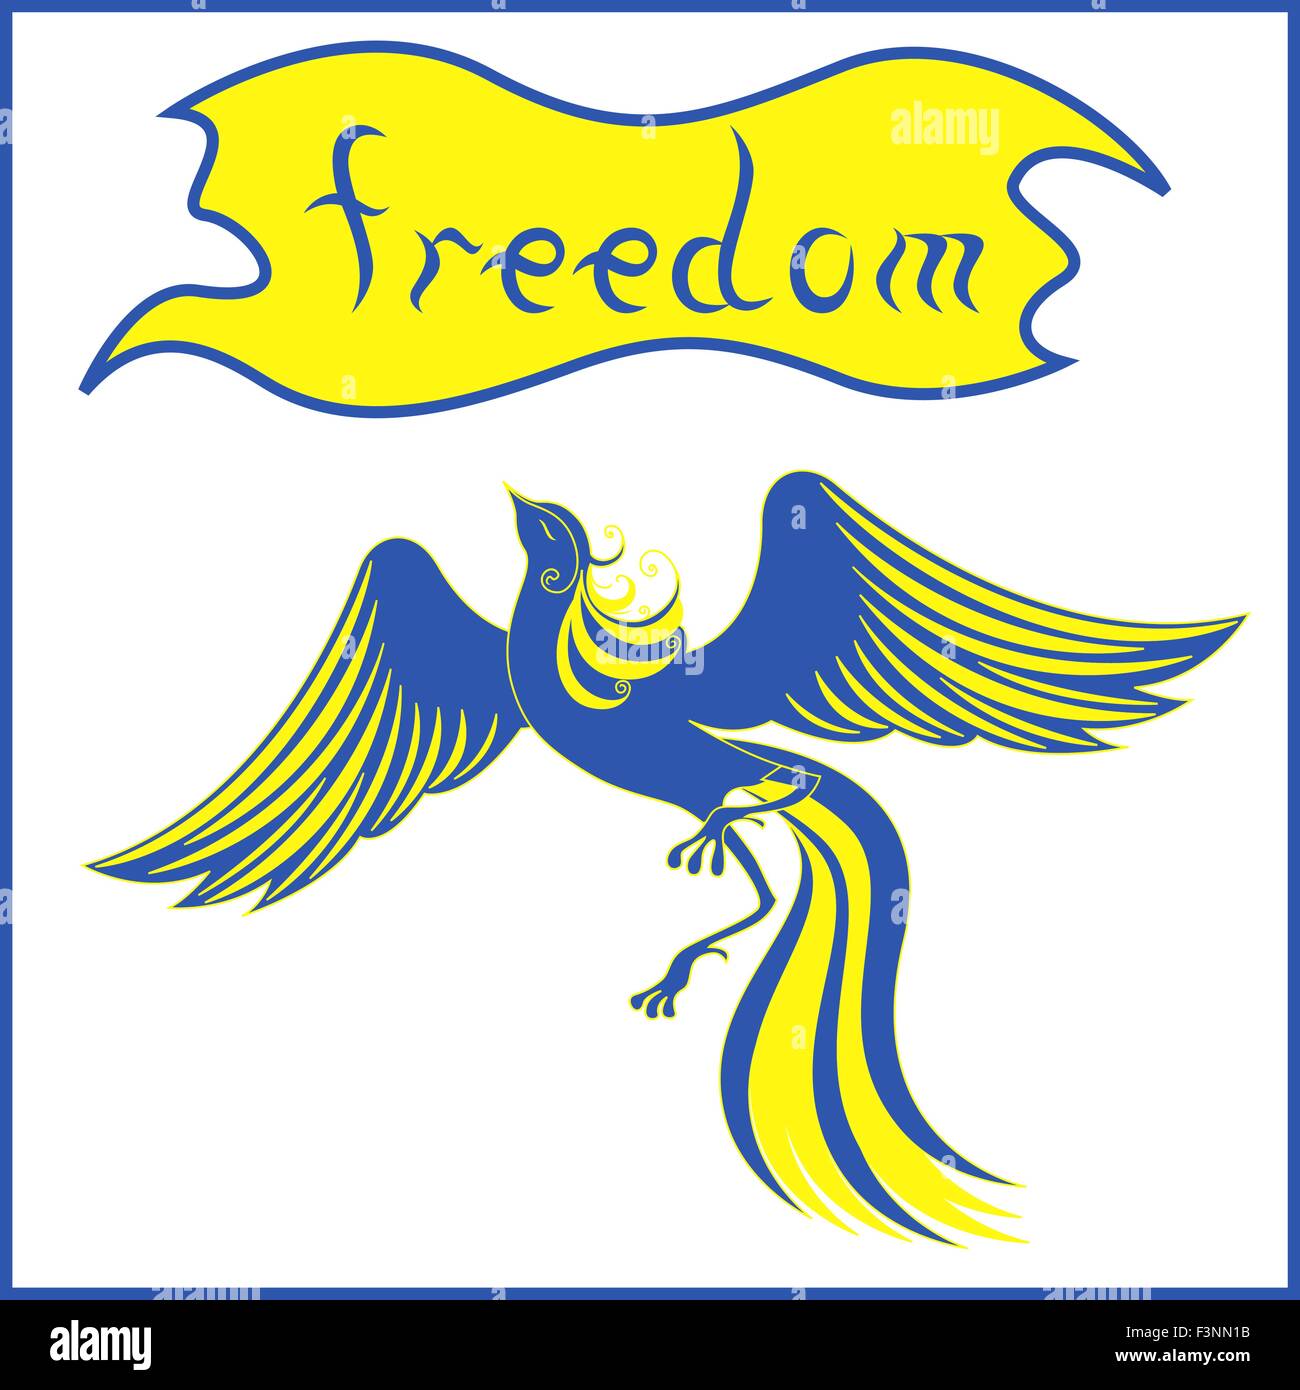 Elegante ave fénix que simboliza una libertad en azul y amarillo, los colores de la bandera nacional de Ucrania. Dibujo a mano alzada ilustración vectorial Ilustración del Vector